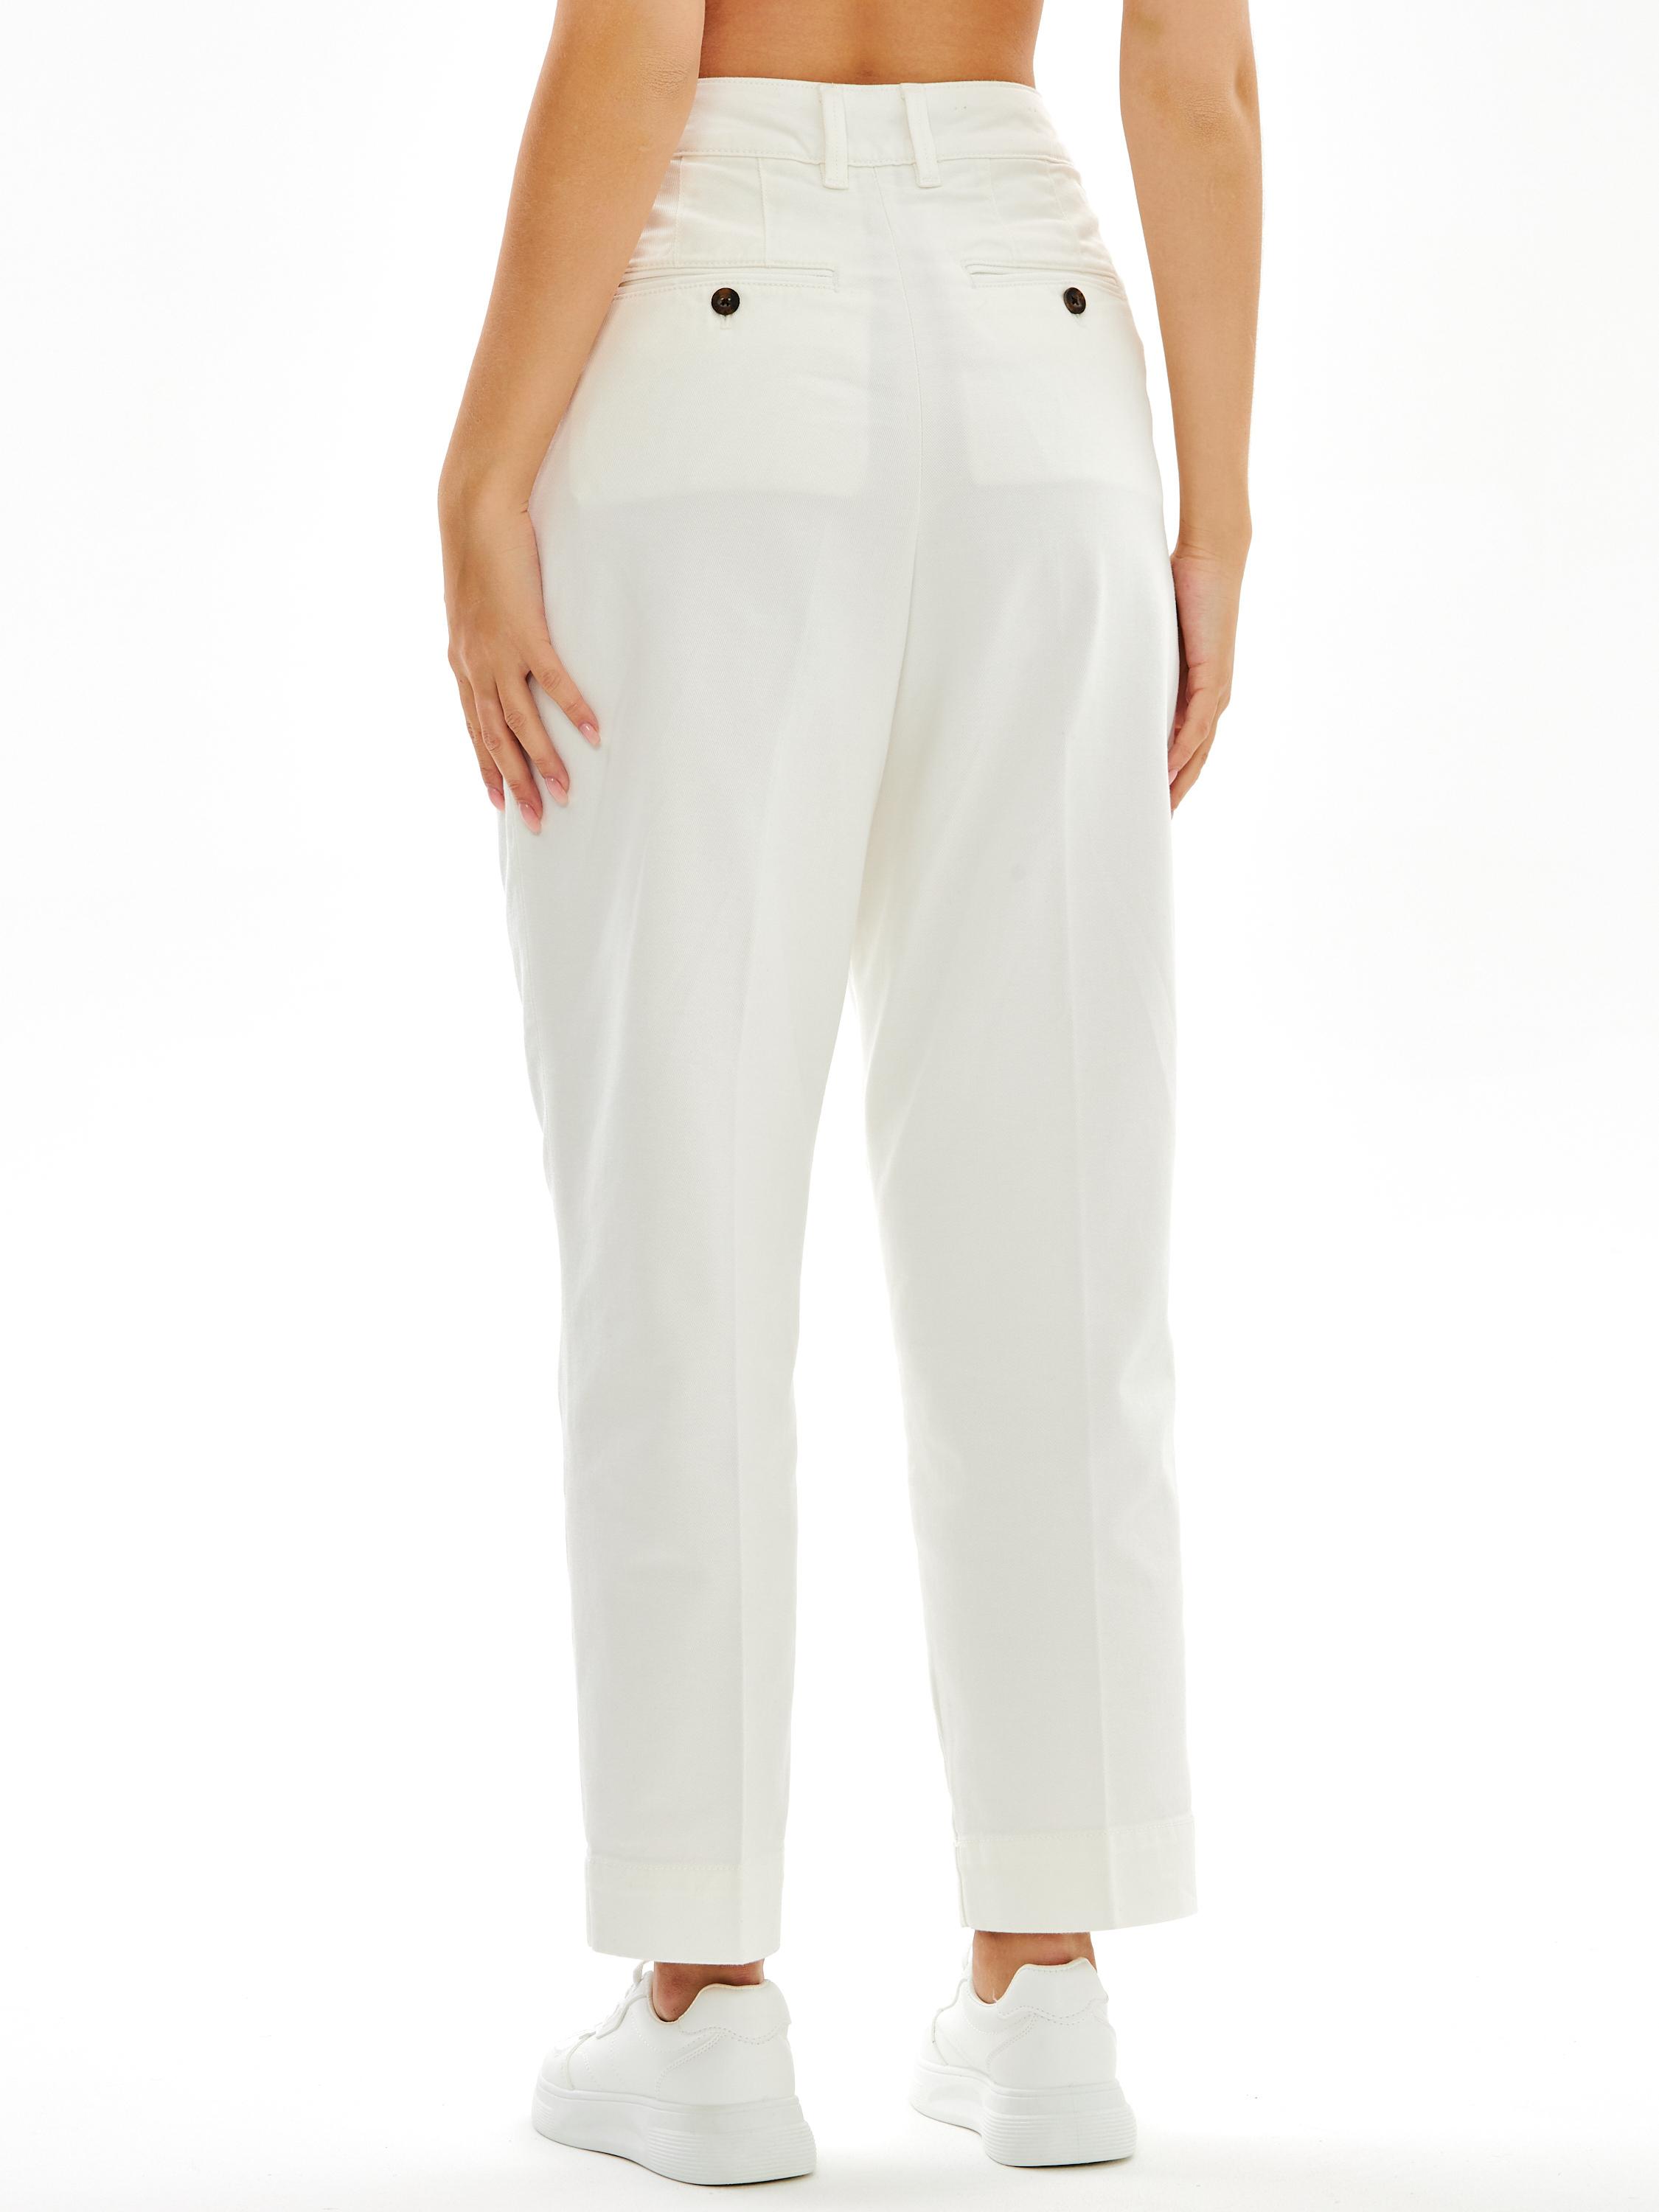 Женские брюки чинос Gant, белые, цвет белый, размер 34 - фото 4